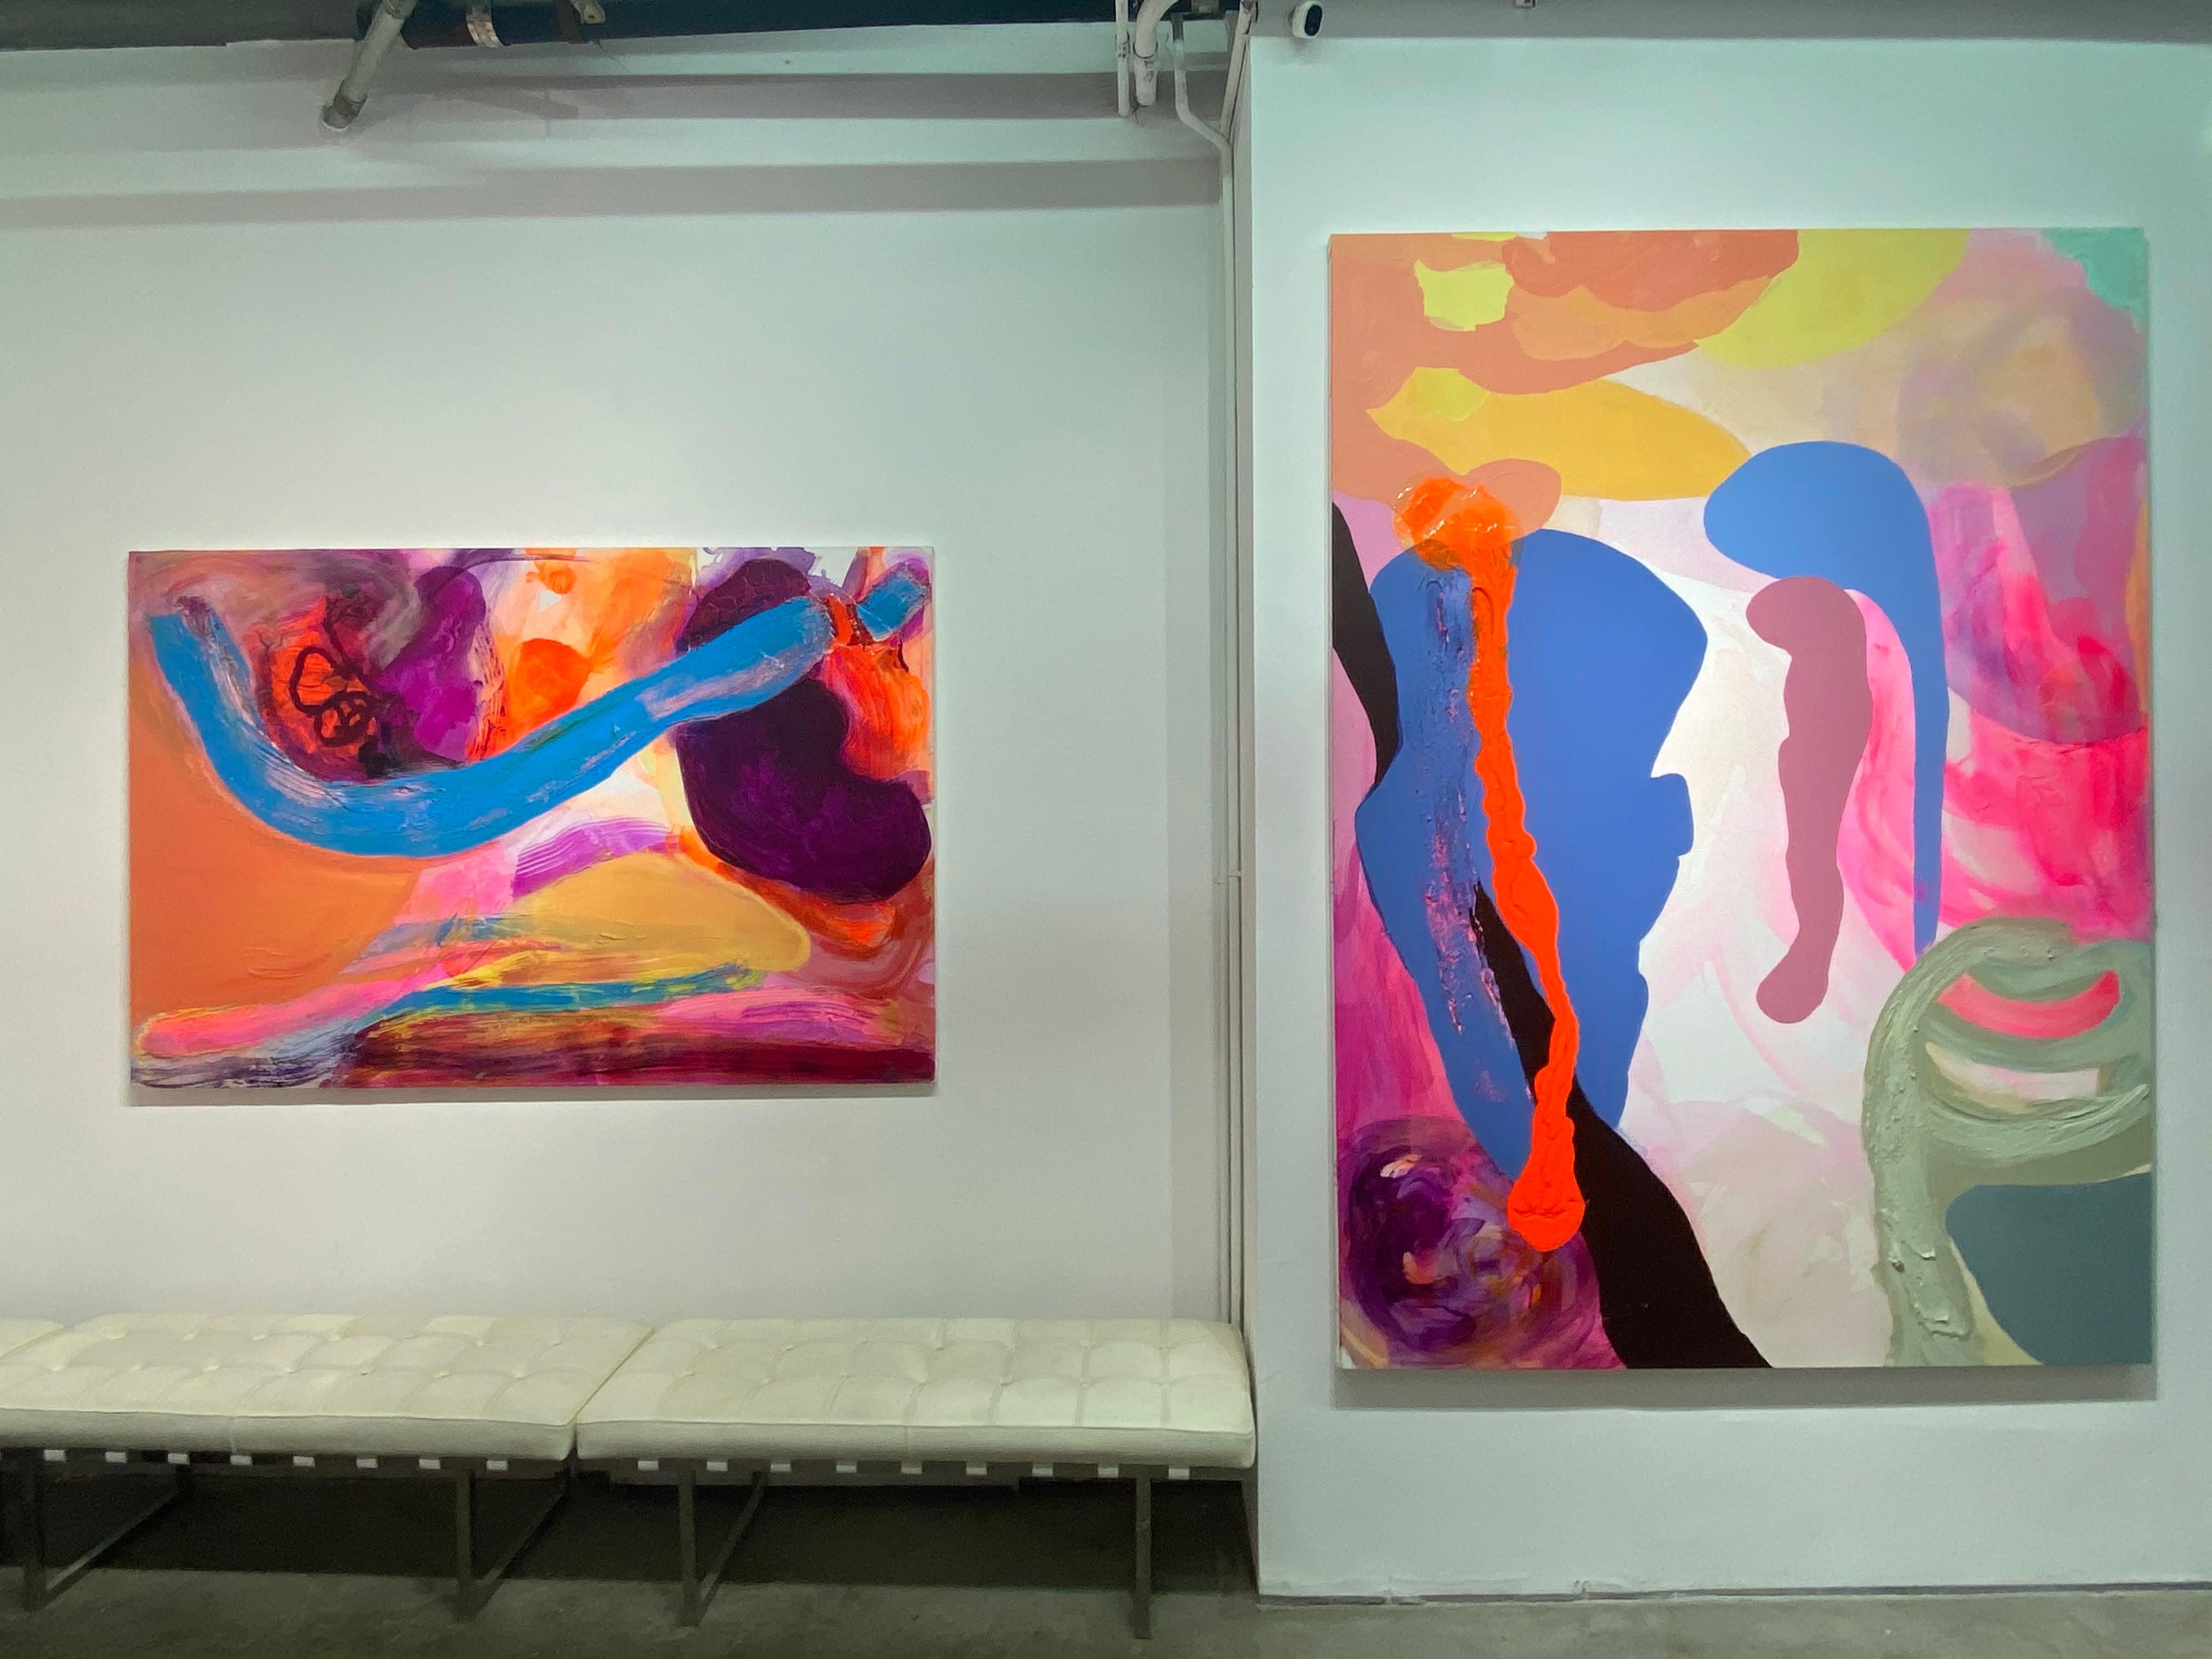 Es handelt sich um ein zeitgenössisches abstraktes Gemälde der New Yorker/ hawaiianischen Künstlerin Debra Drexler.  Vertikale, längliche Formen in Rosa, Lila, Lavendel und Türkisblau erheben sich über ein geschichtetes Feld in Cremeweiß, gebürstet